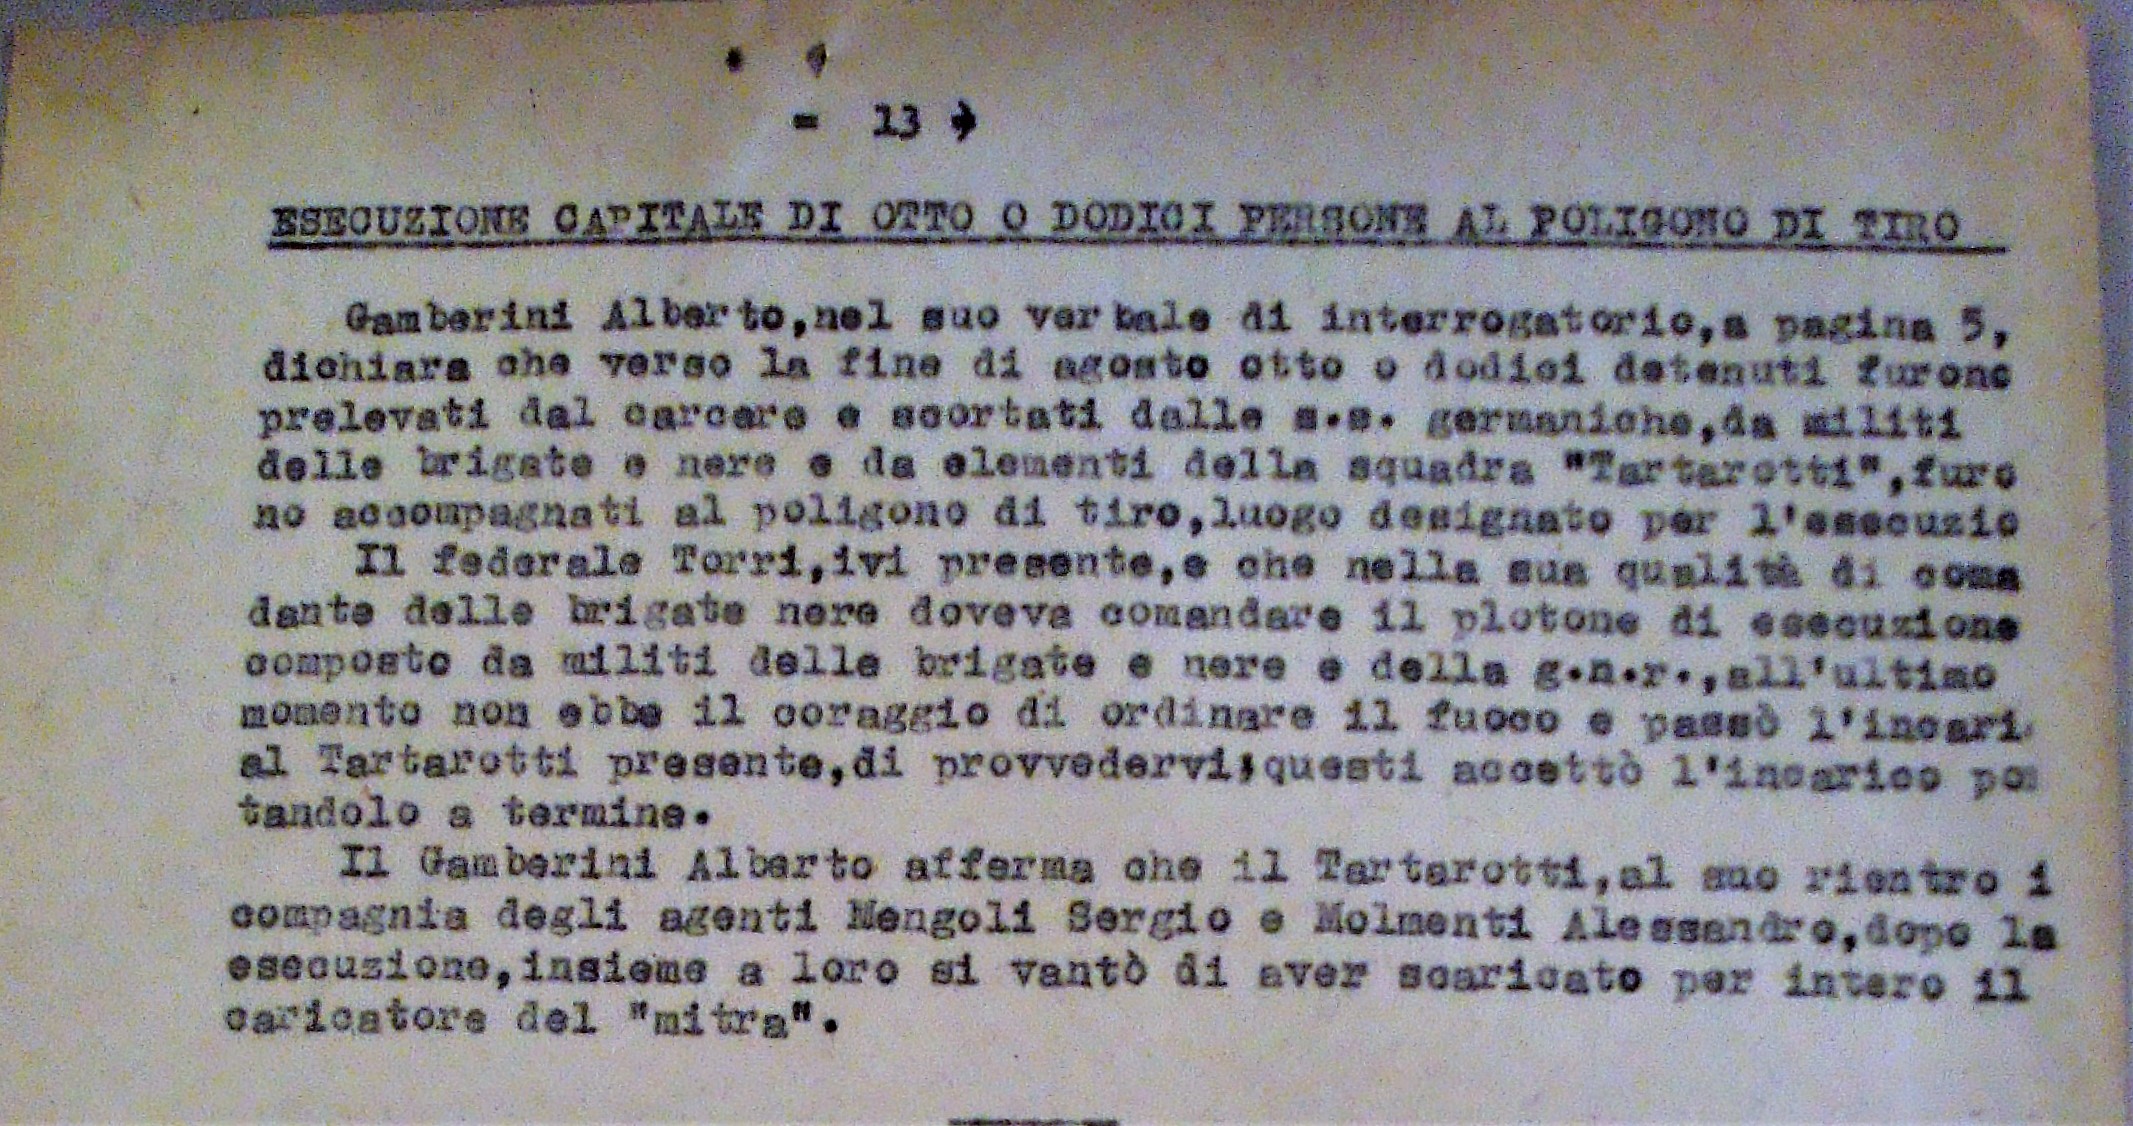 La sintesi della testimonianza di A. Gamberini, allegata al verbale dell'interrogatorio di Renato Tartarotti, nel fascicolo a lui dedicato, presso l'Archivio di Stato di Bologna.